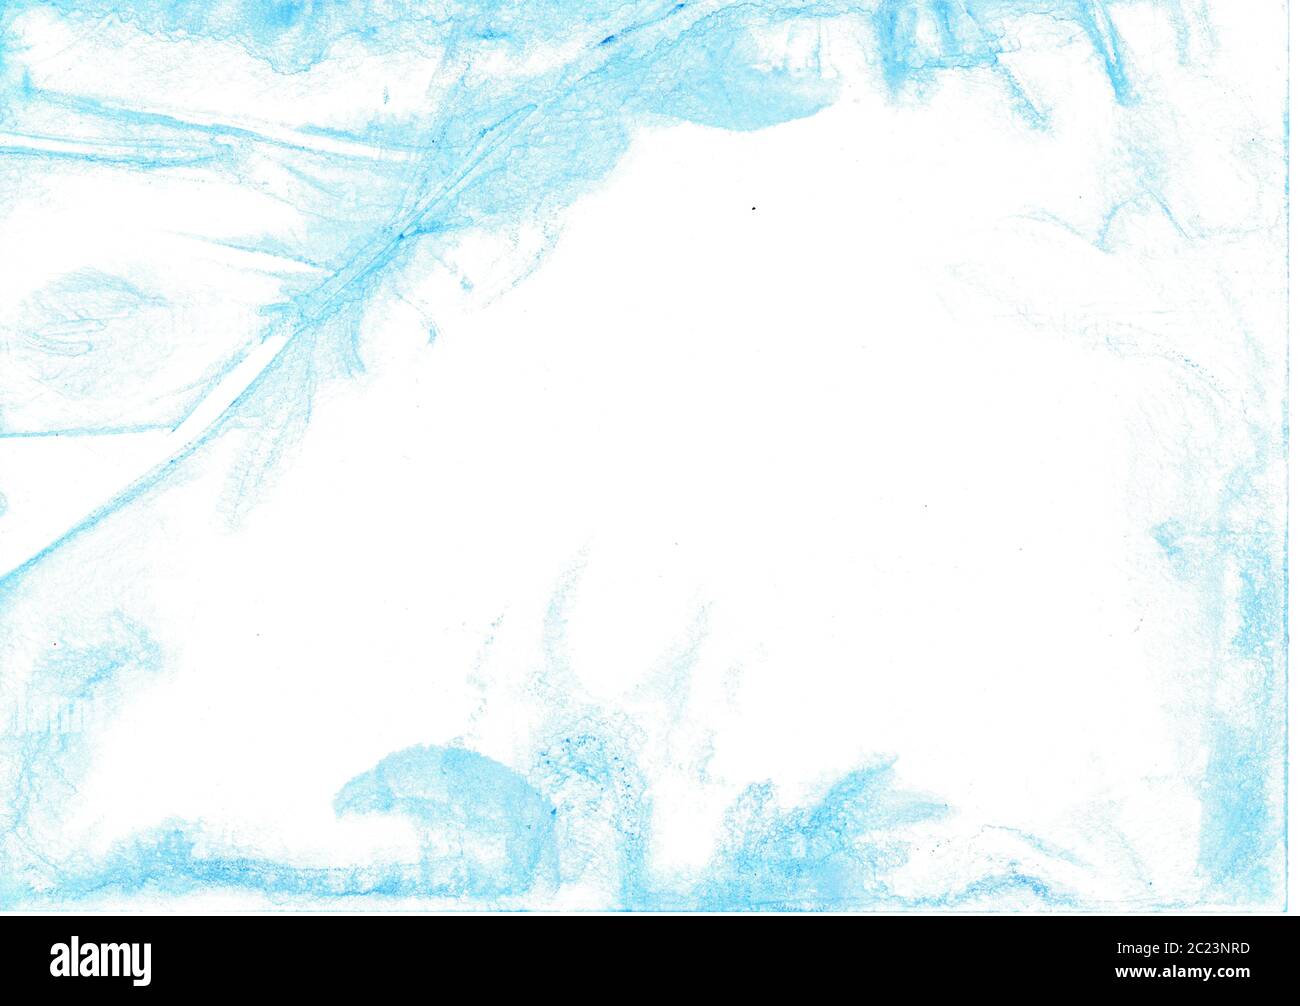 Avec crayons aquarelle peint à la main aquarelle fond bleu clair sur papier rugueux Banque D'Images